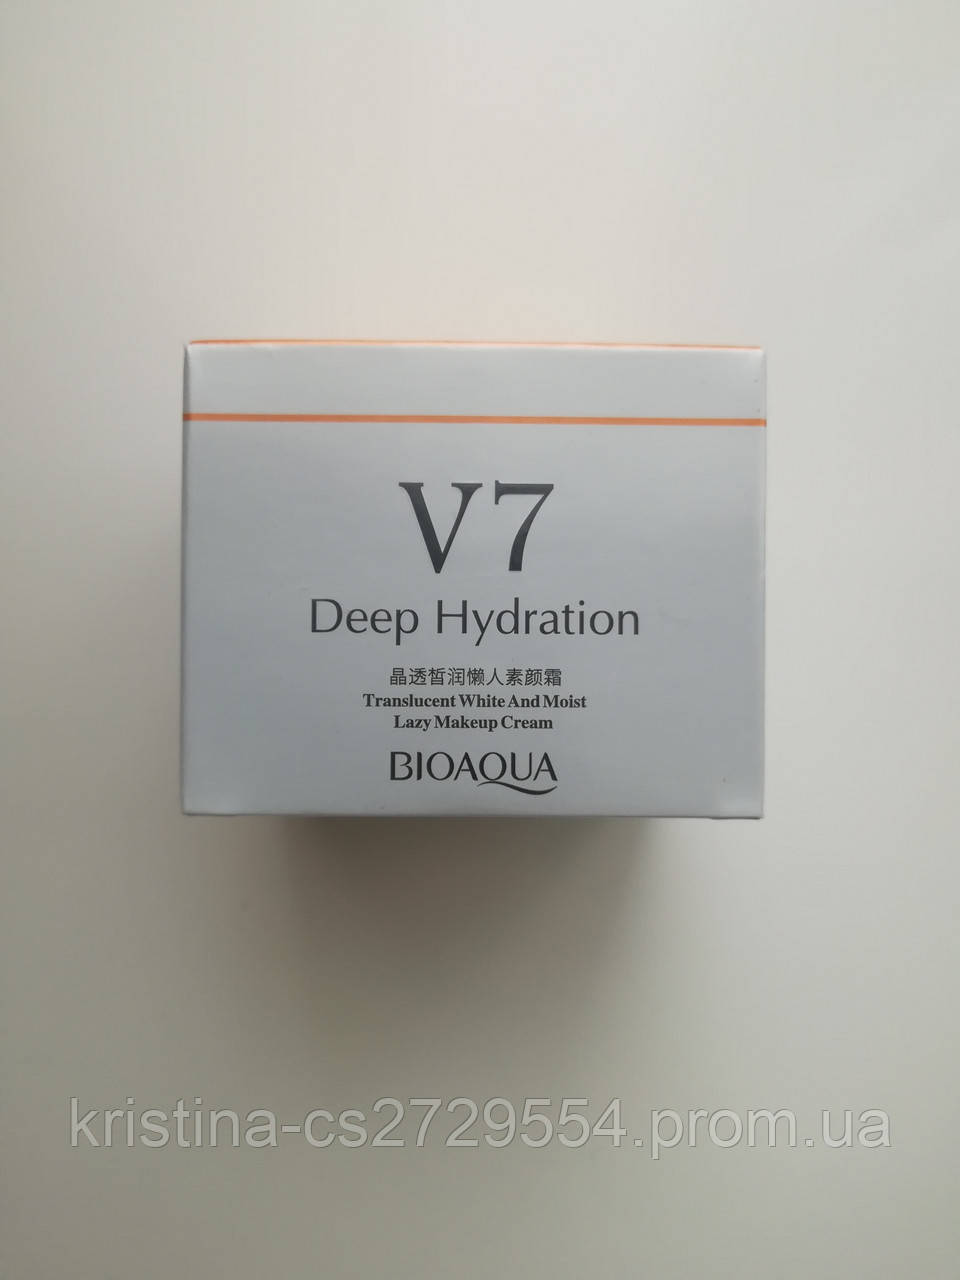 Крем для лица Bioaqua V7 Deep Hydration Cream увлажняющий Копия биоаква дип